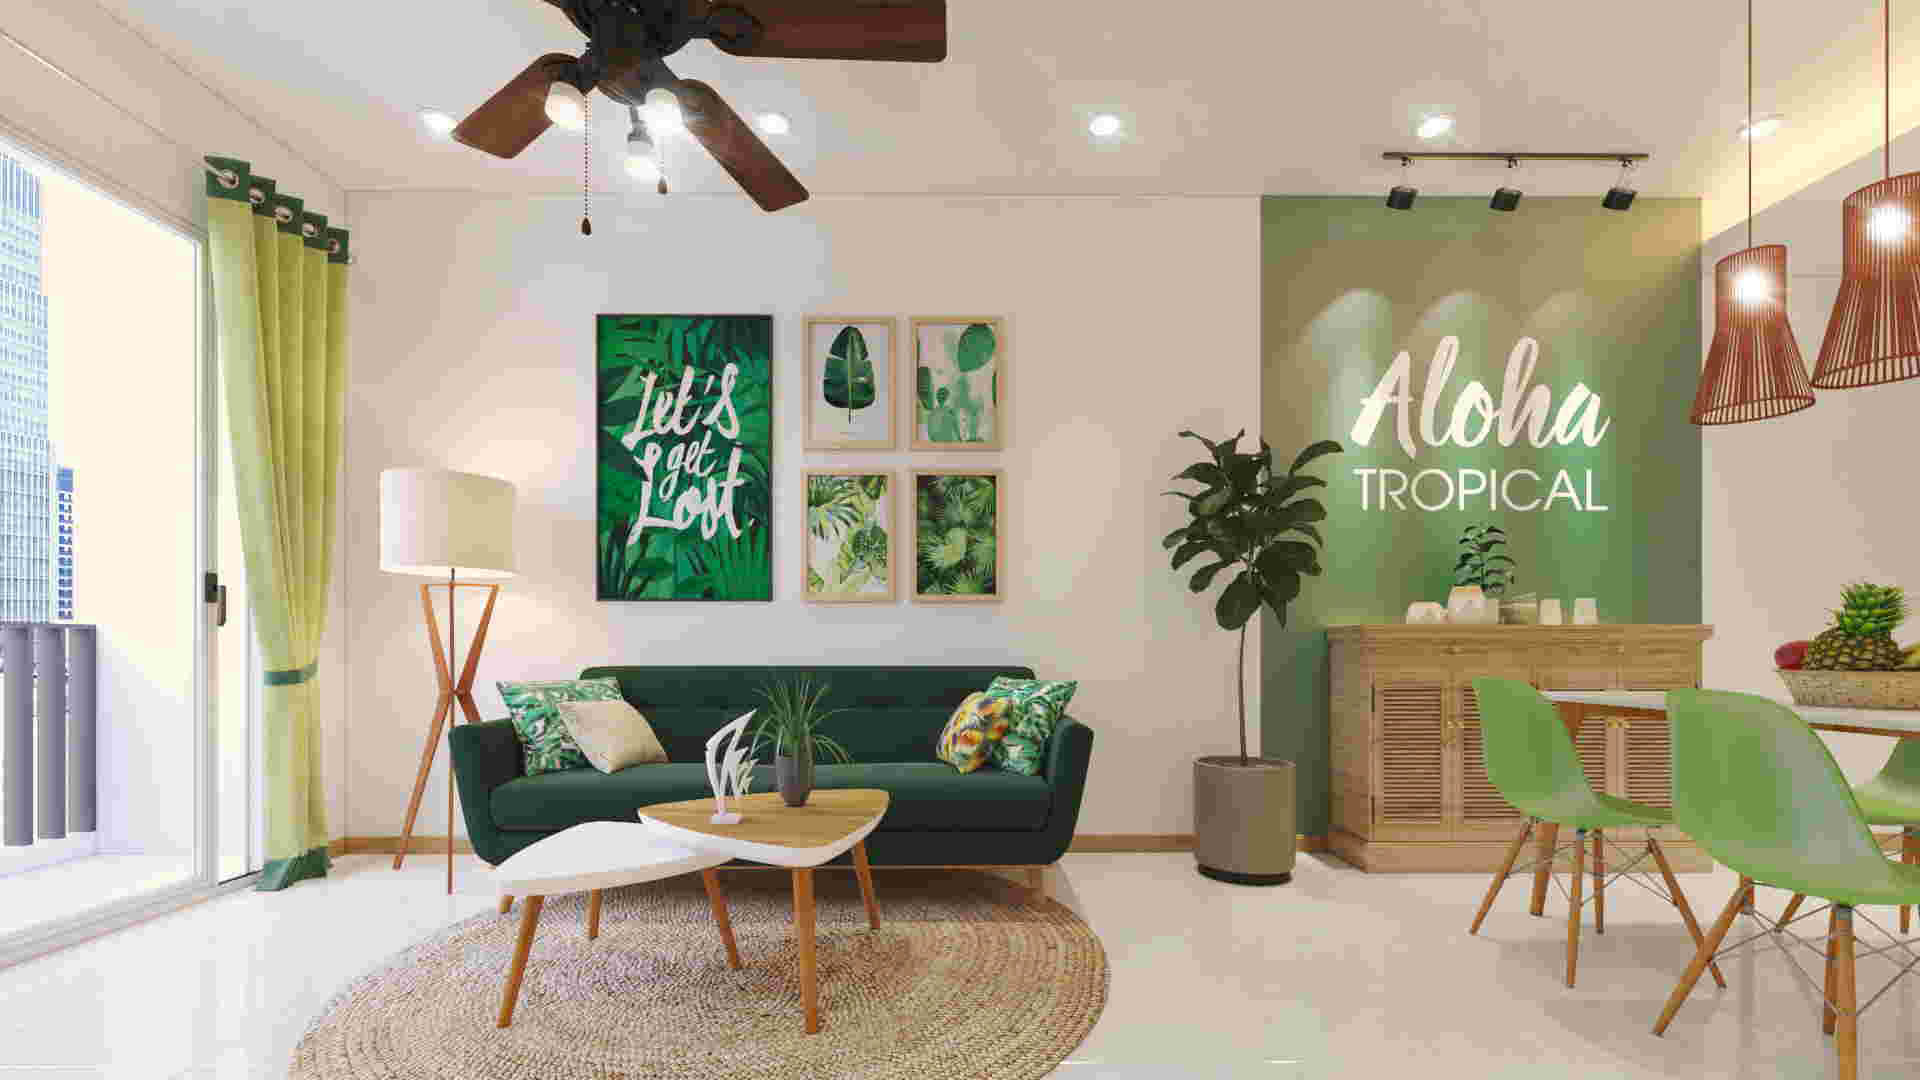 Thiết kế nội thất Tropical với màu xanh lá mát mẻ